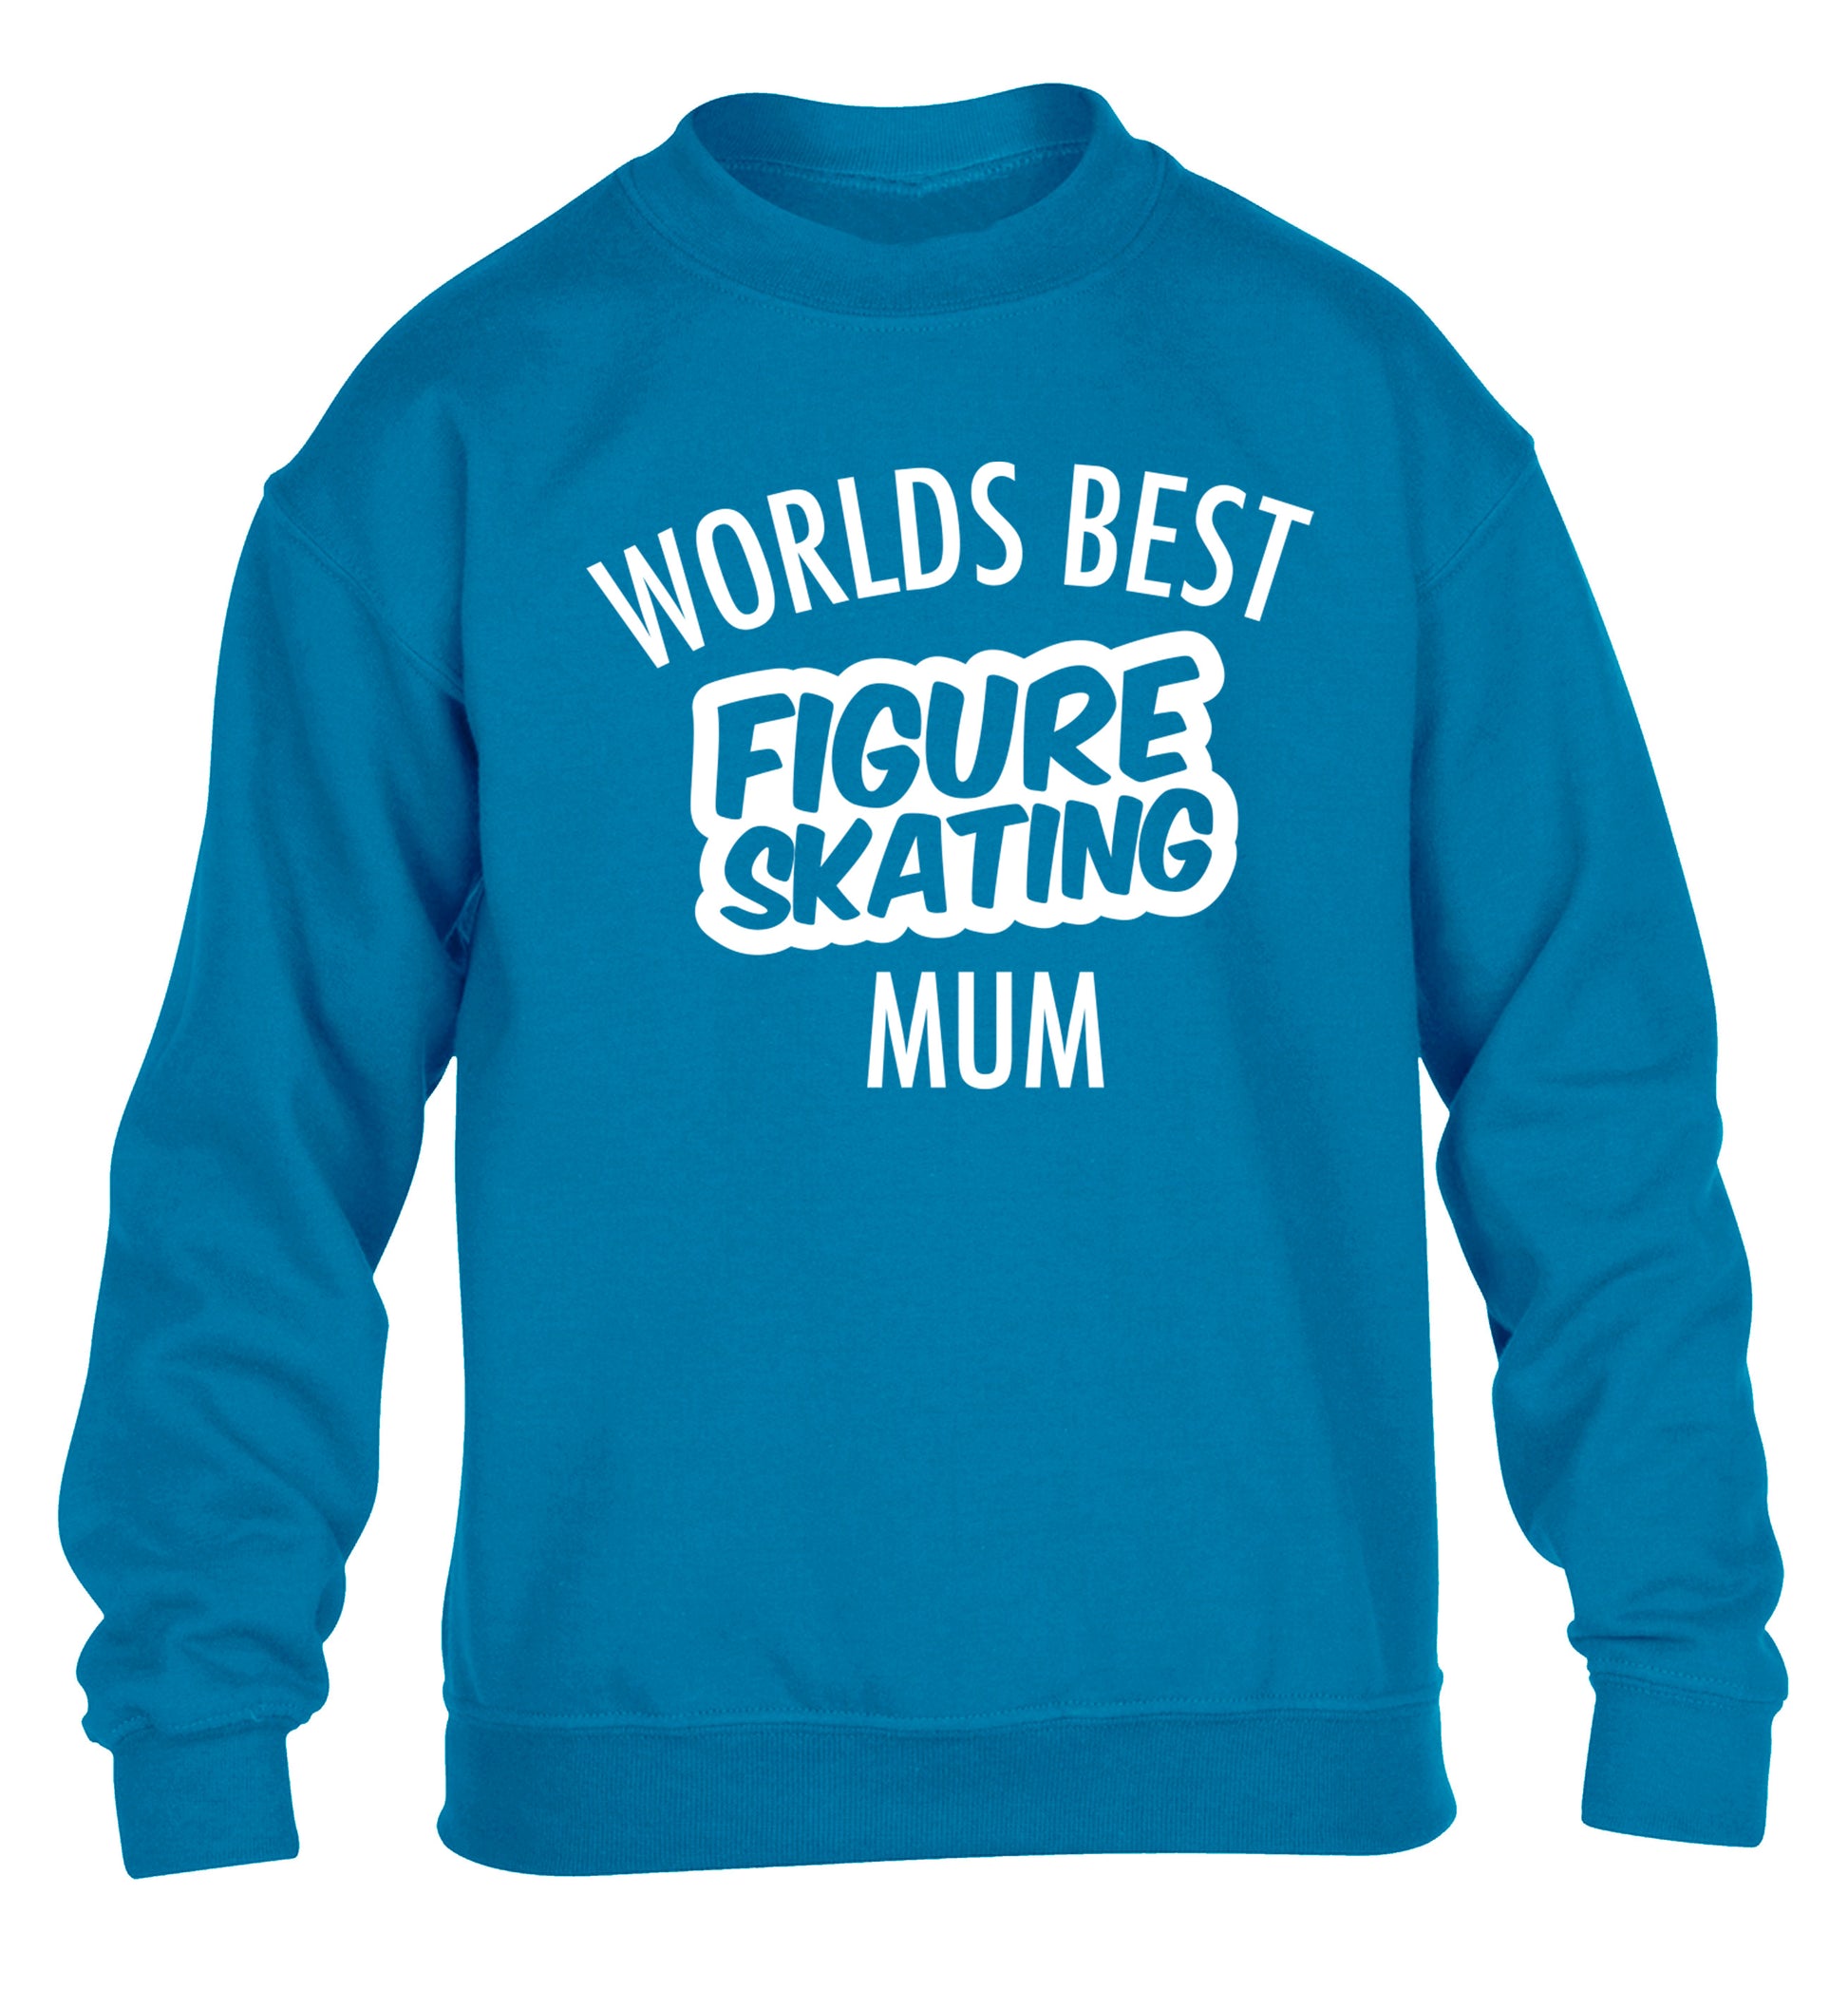 Worlds best figure skating mum children's blue sweater 12-14 Years